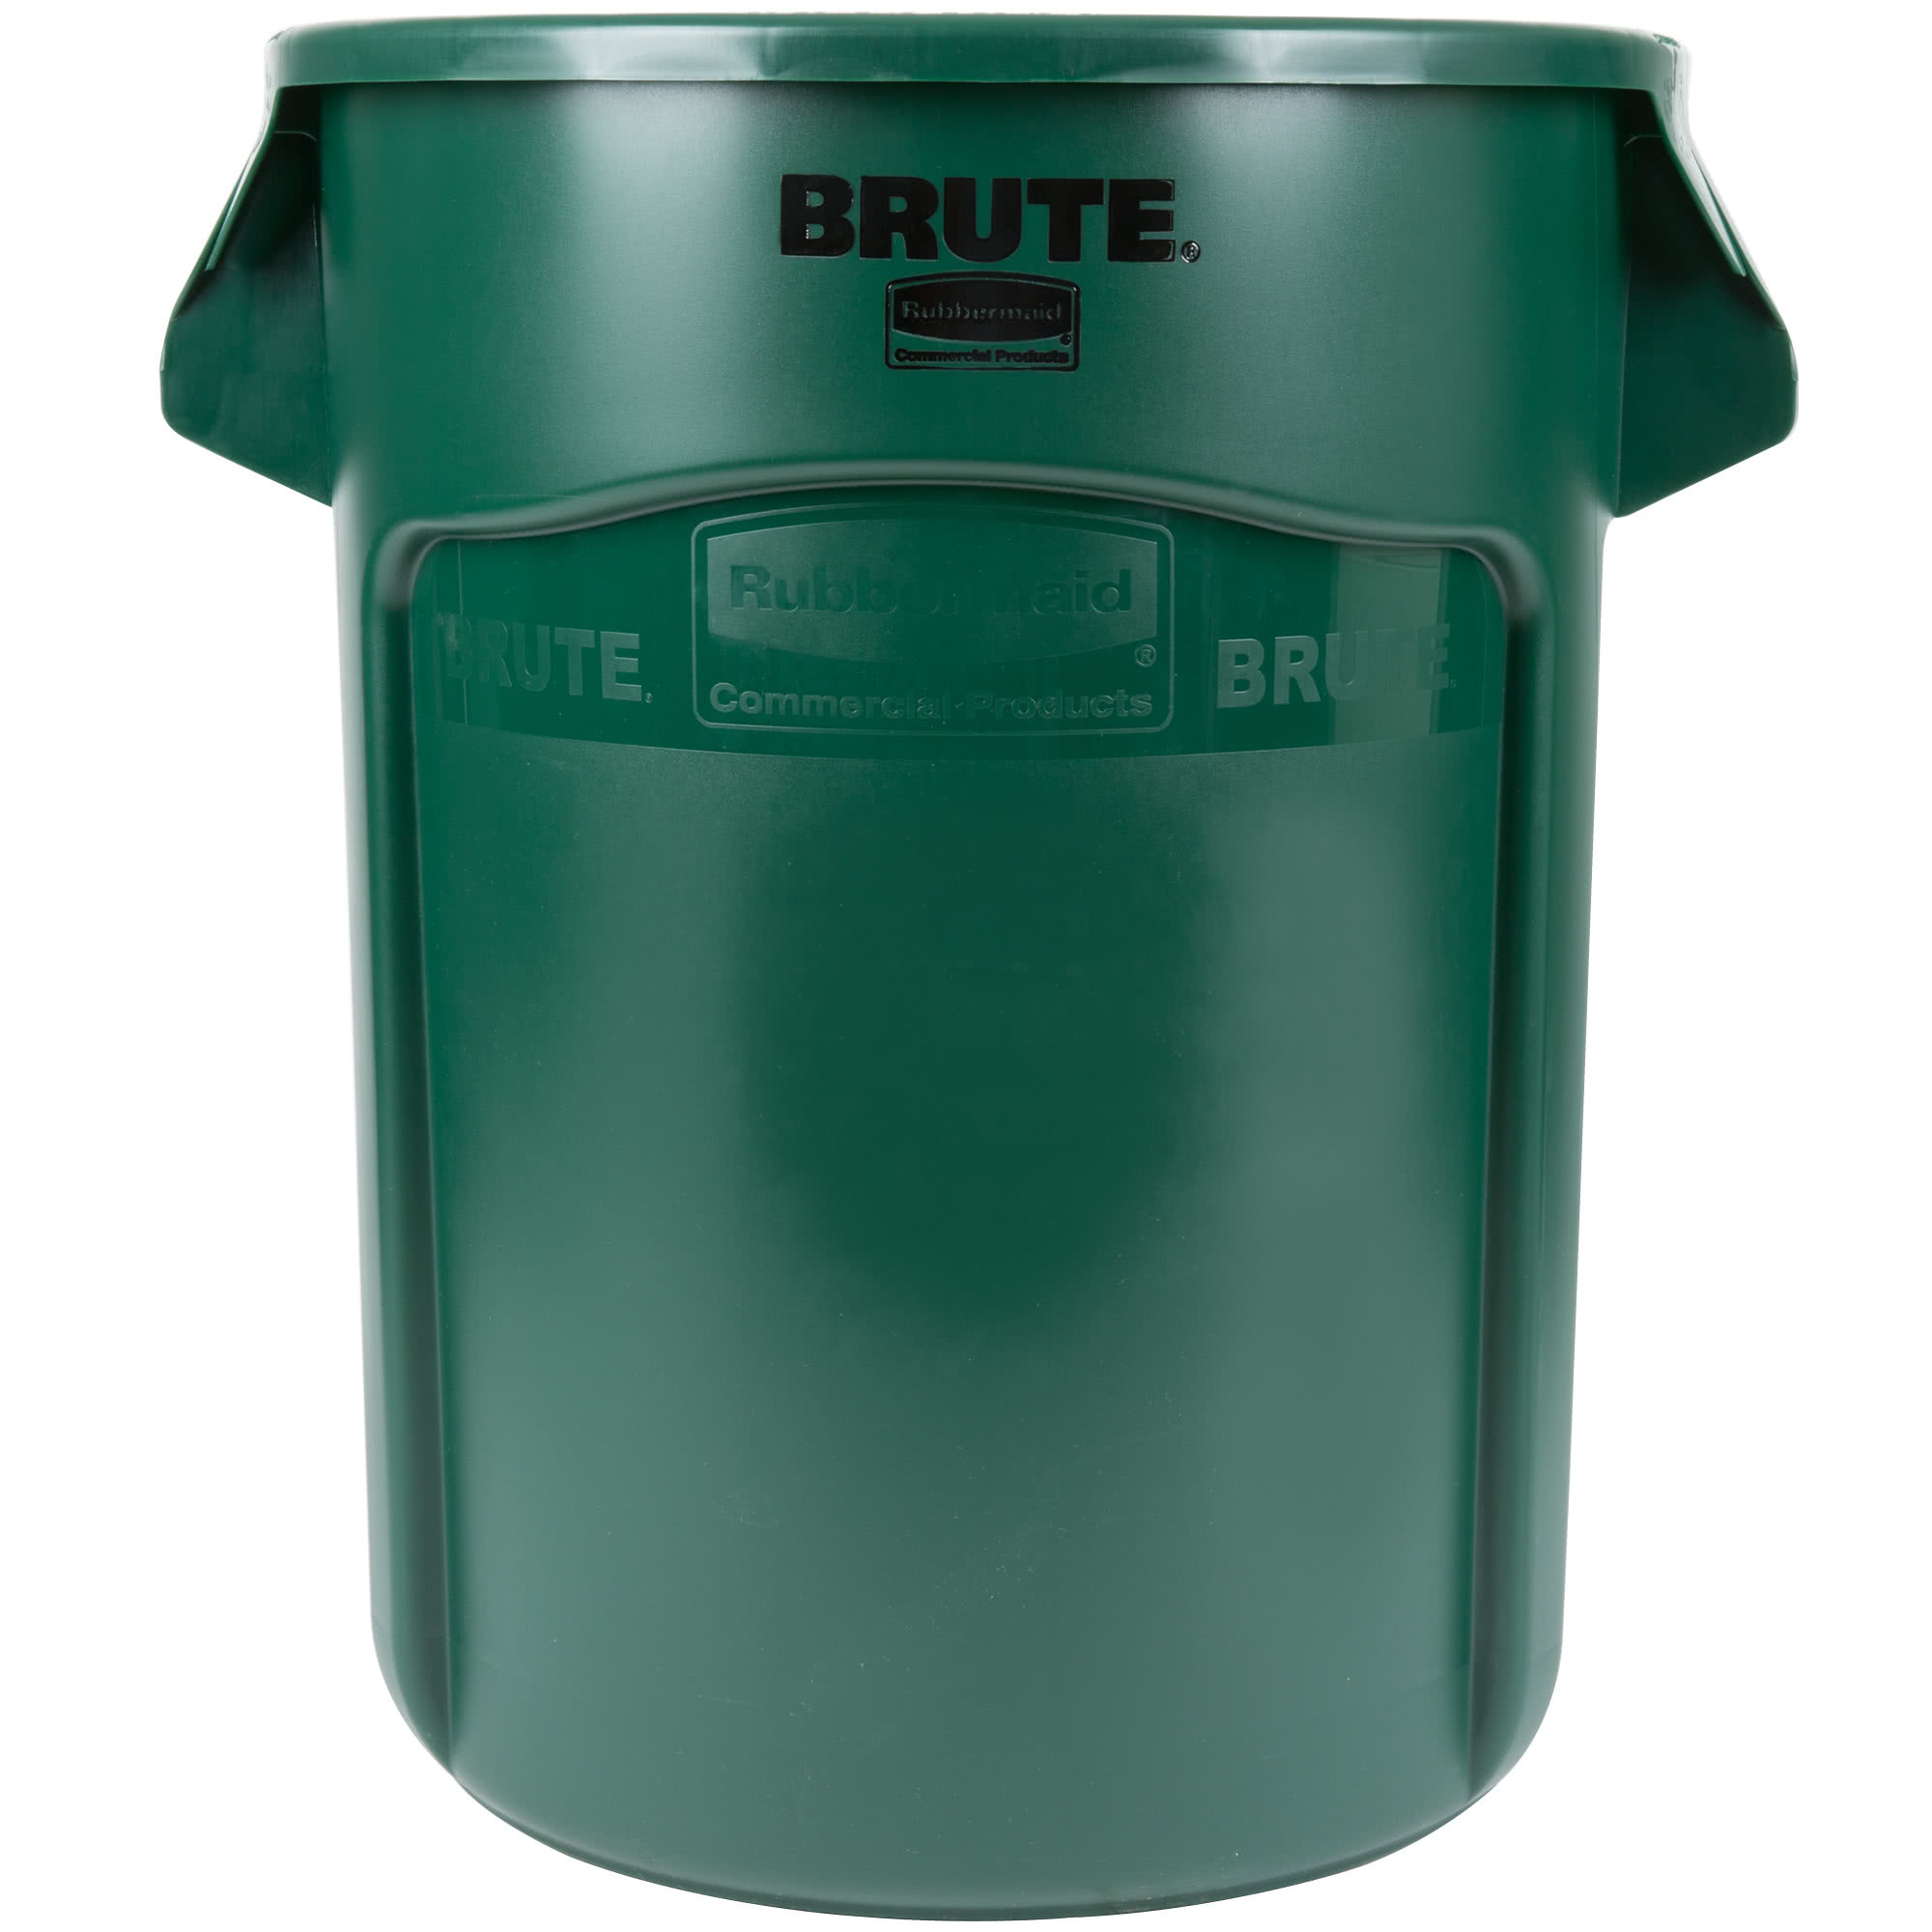 Rubbermaid FG262000DGRN contenedor Brute color verde con capacidad para 20 galones